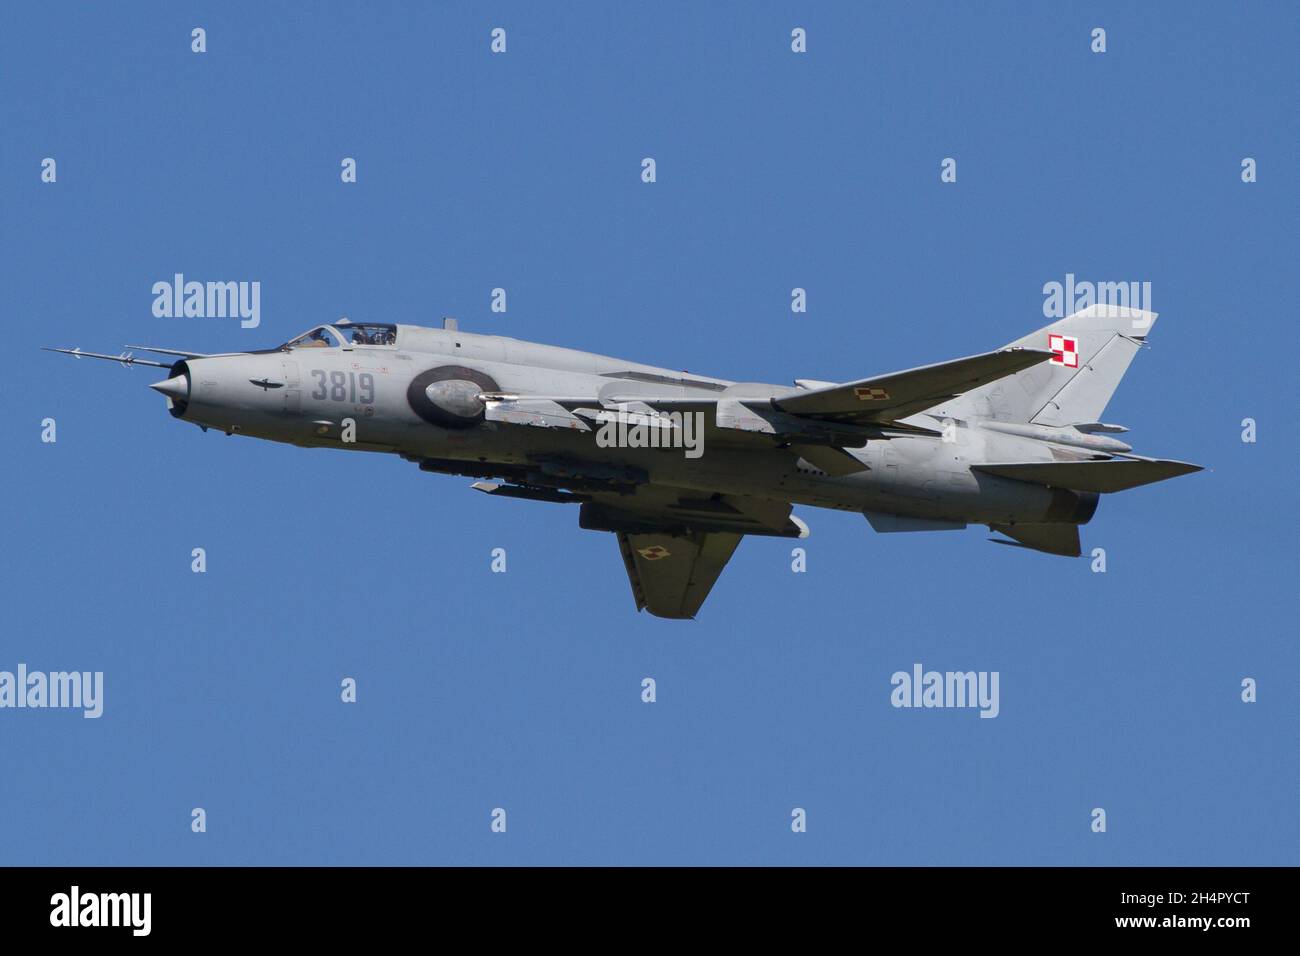 ZELTWEG, AUTRICHE - 08 septembre 2019 : avion de chasse Sukhoi SU-22 Fitter de l'armée de l'air polonaise devant le ciel bleu à Zeltweg, Autriche Banque D'Images